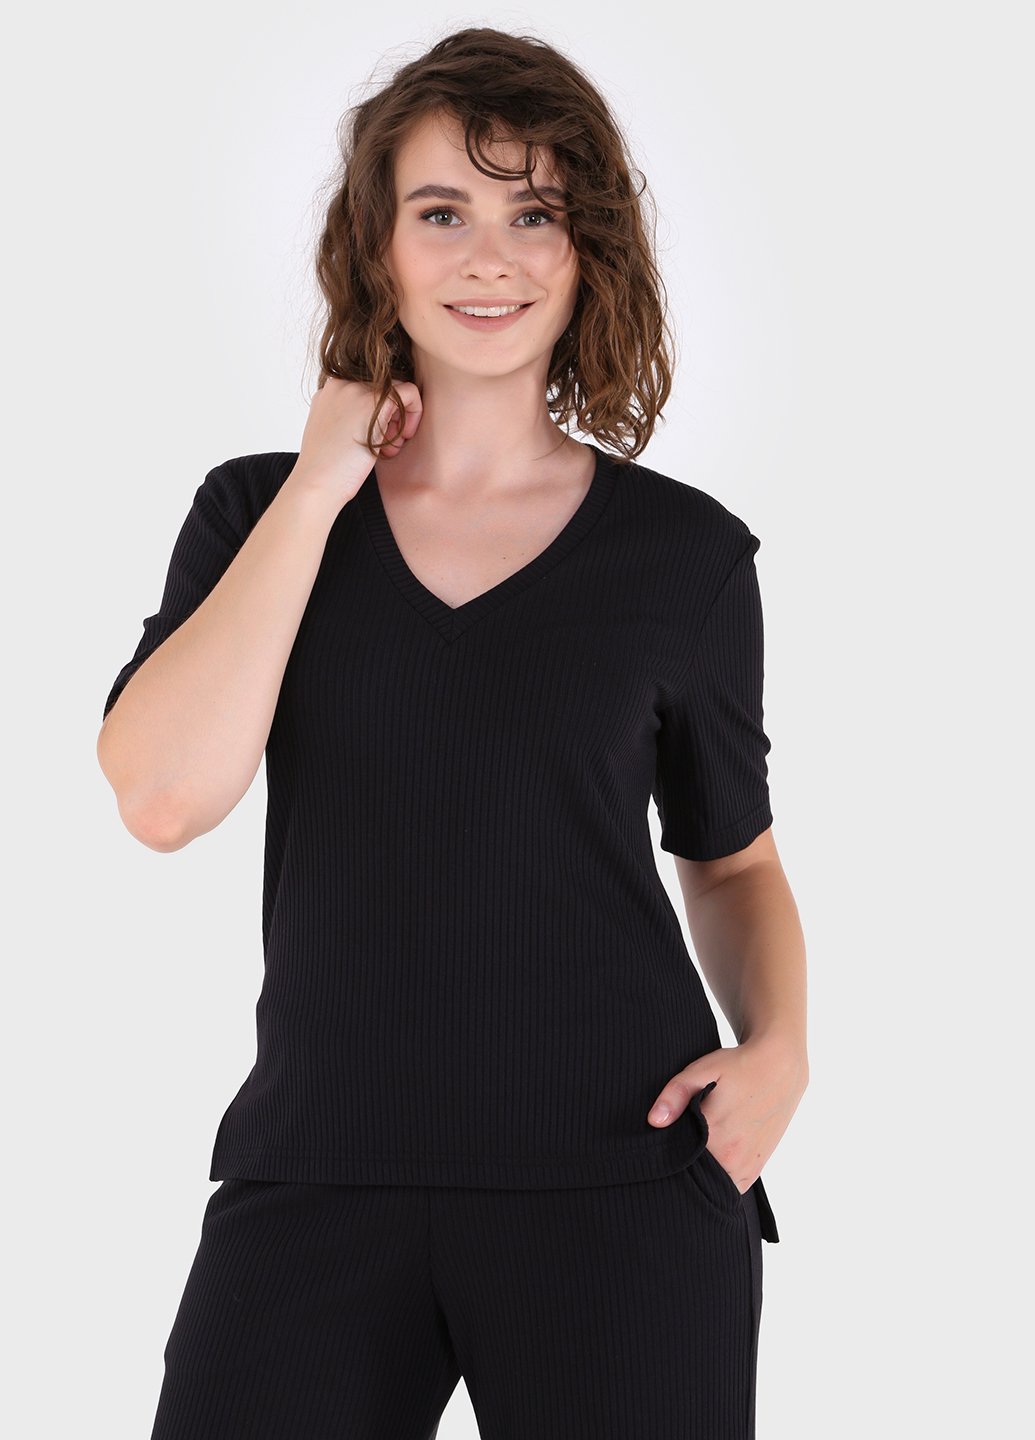 Купить Легкая футболка женская в рубчик Merlini Корунья 800000021 - Черный, 42-44 в интернет-магазине